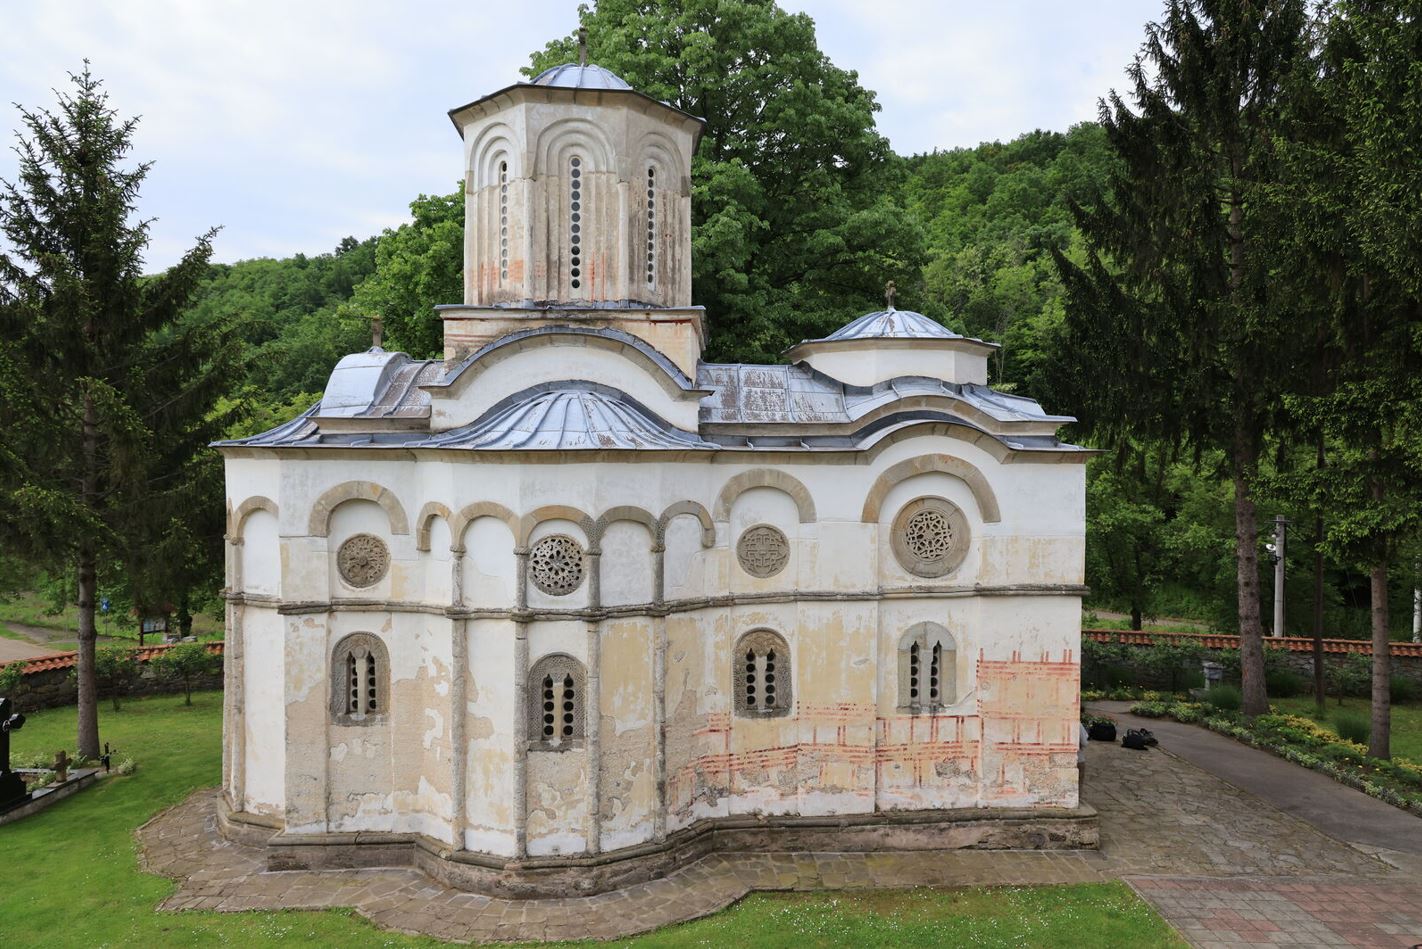 Северна страна Цркве Светог Илије у Манастиру Руденици. Фотографија је власништво Фонда Благо.